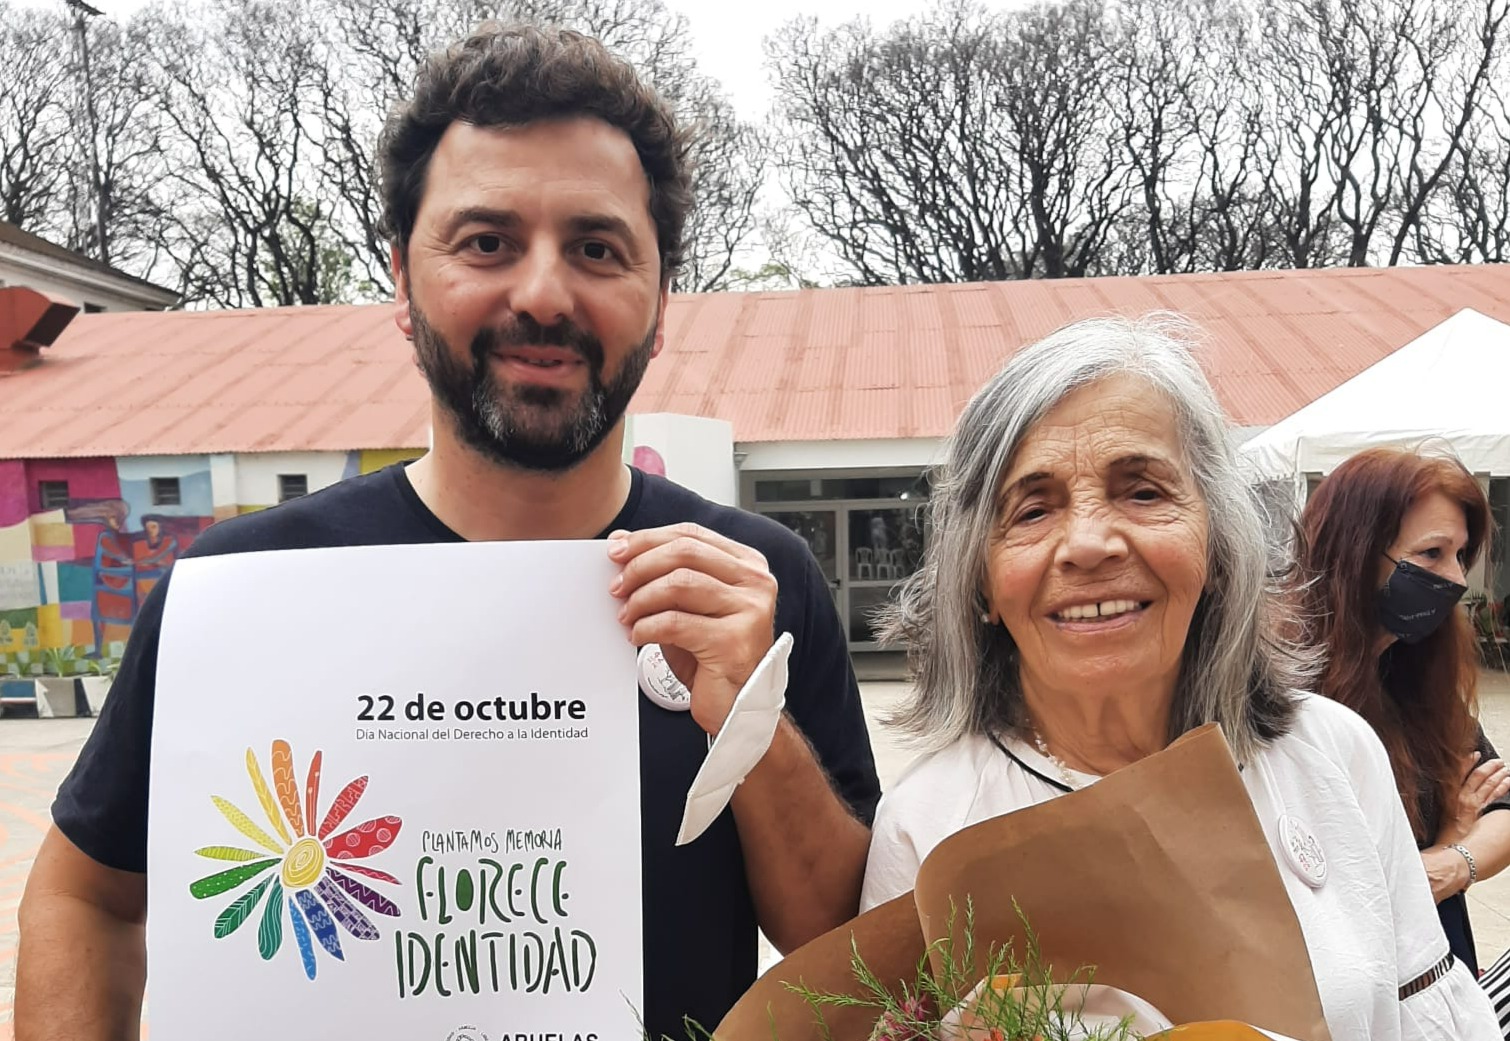 Leo Fossati y Sonia en la campaña "Florece Identidad".